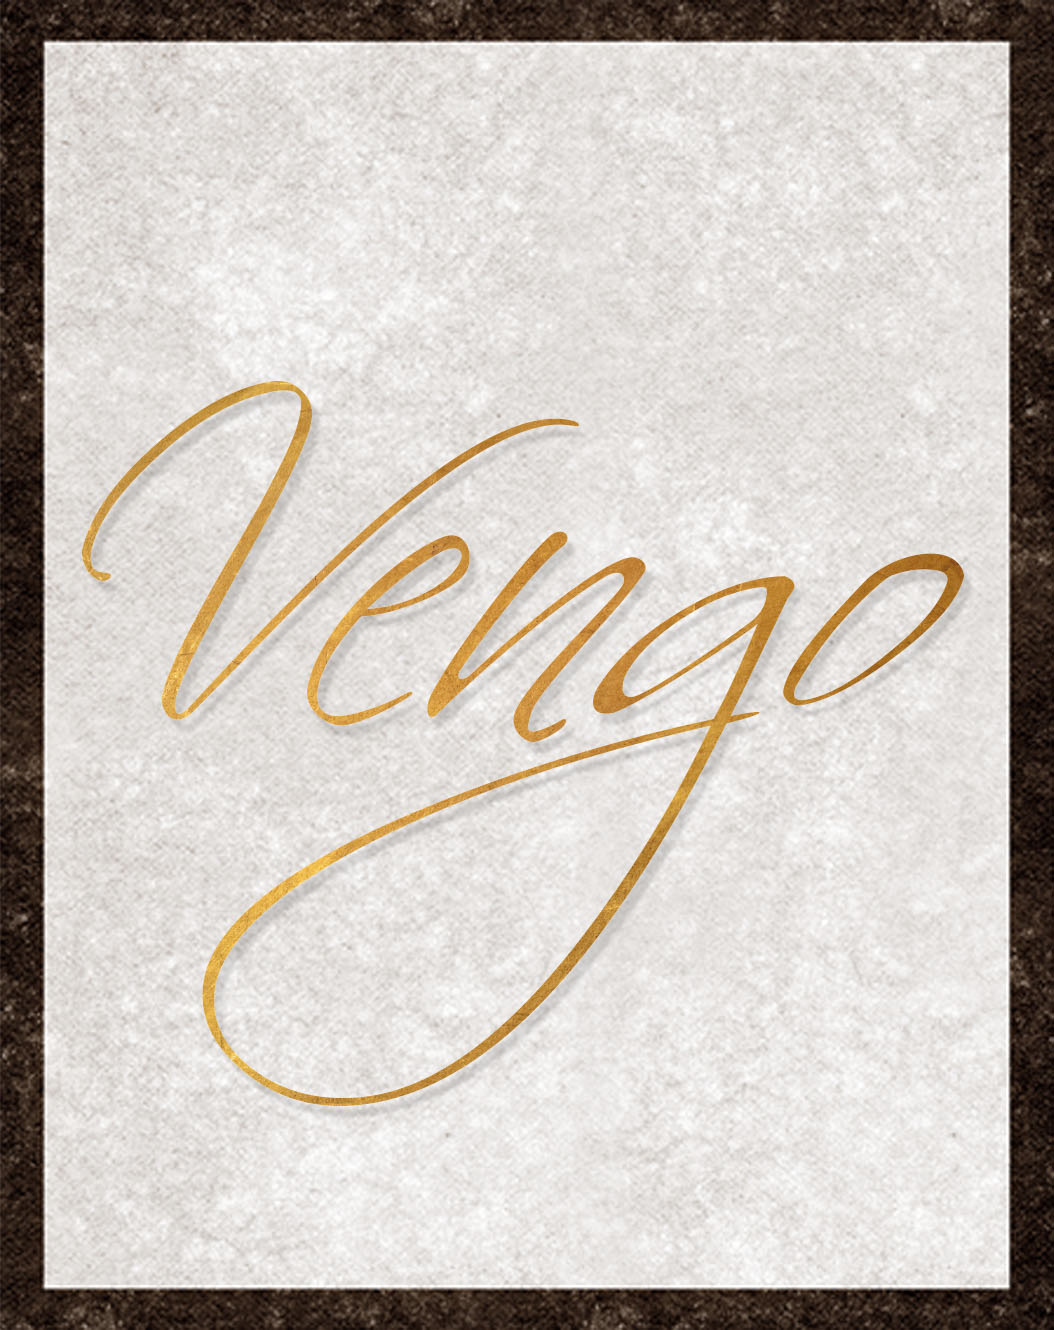 VENGO | identyfikacja wizualna, materiały promocyjne